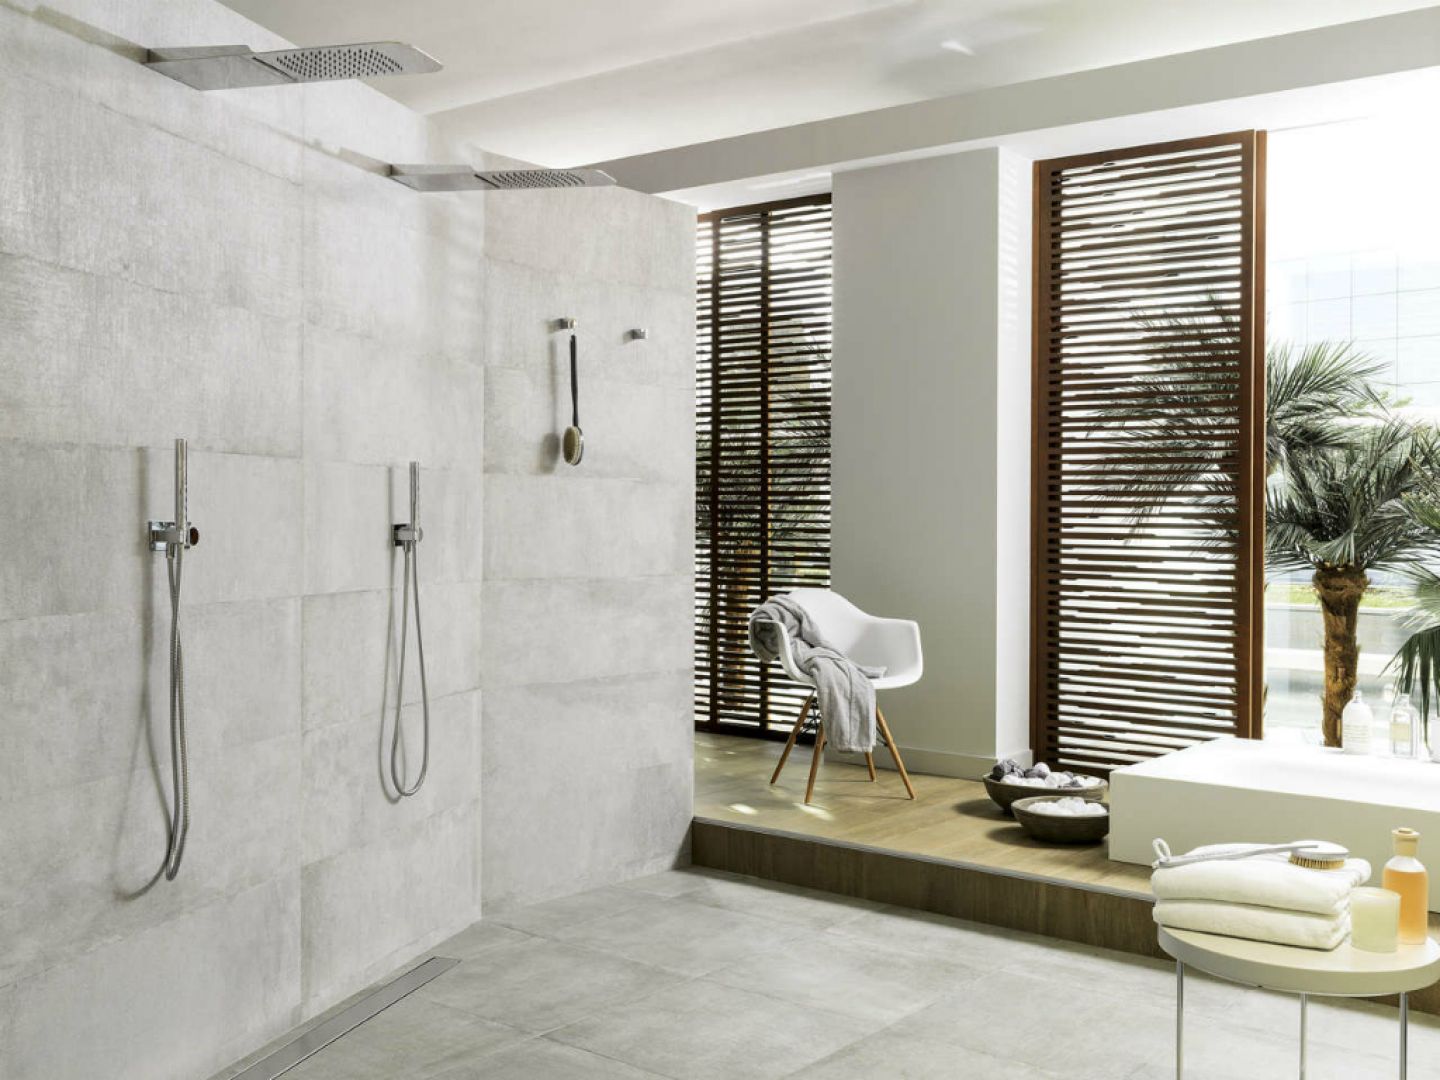 Wanna czy prysznic? Fot. Galerie Venis/Home Concept